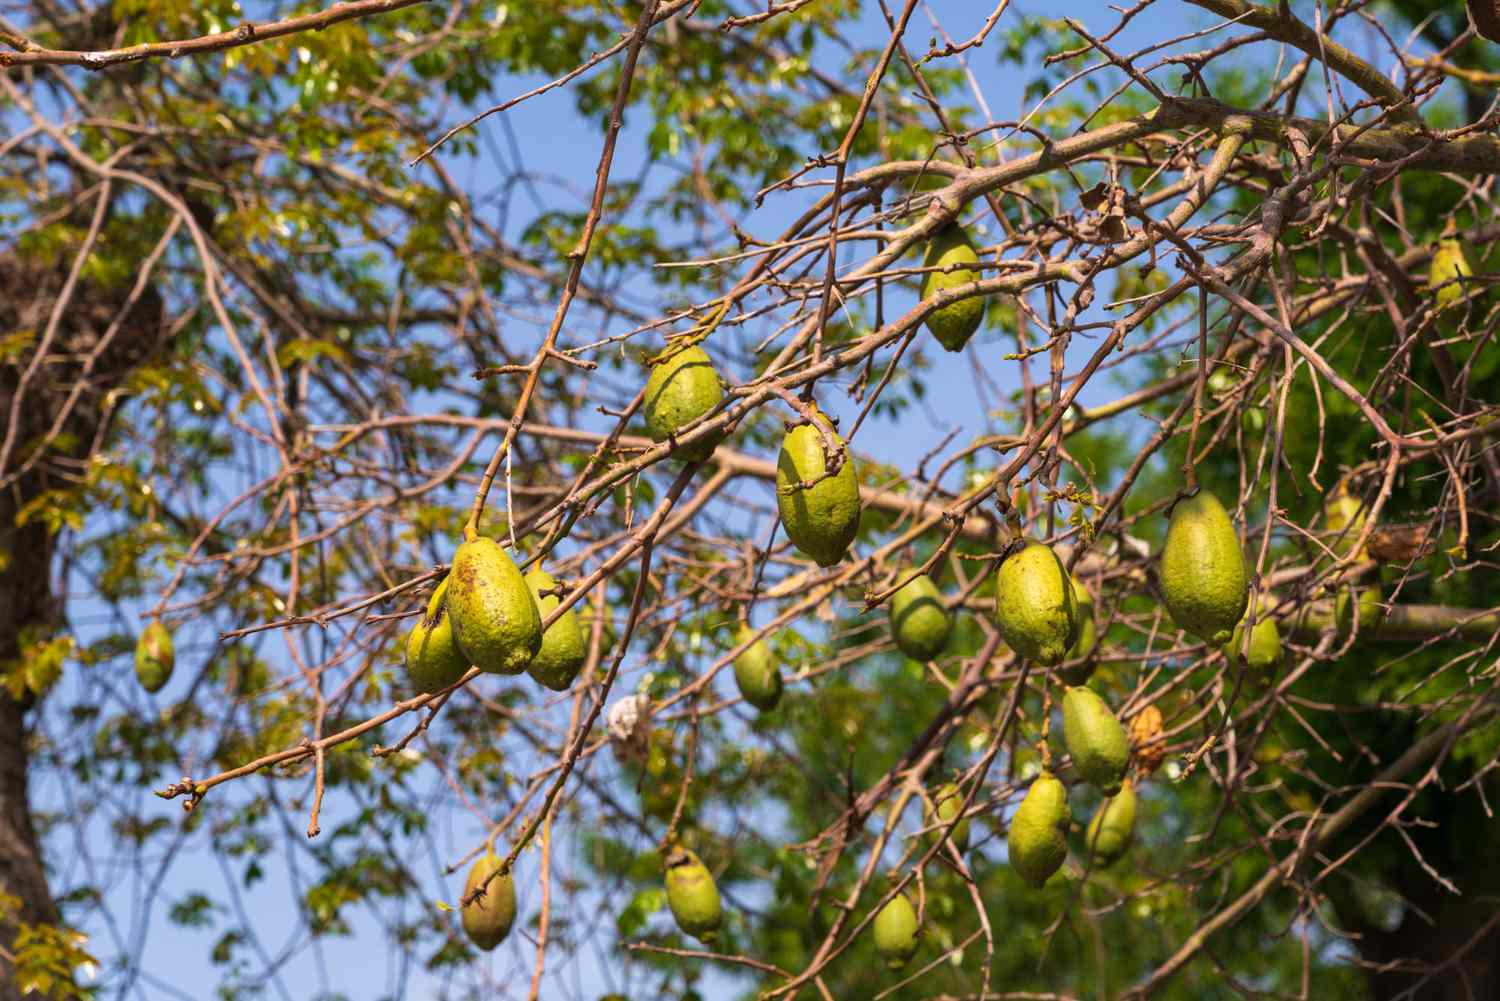 baobab fruit on tree